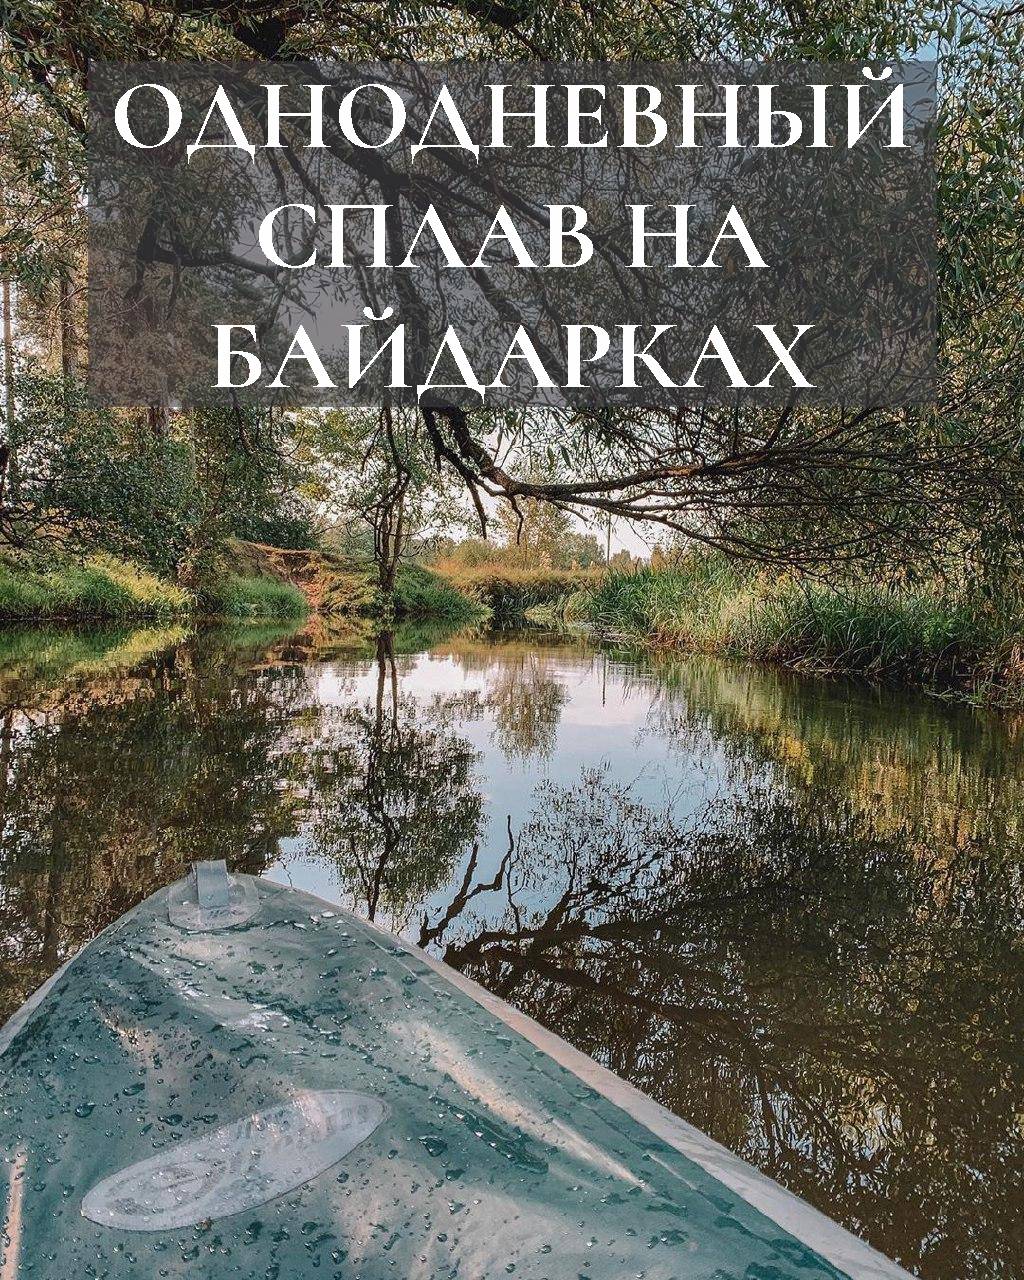 Однодневный сплав на байдарках по рекам Беларуси из Минска водный поход